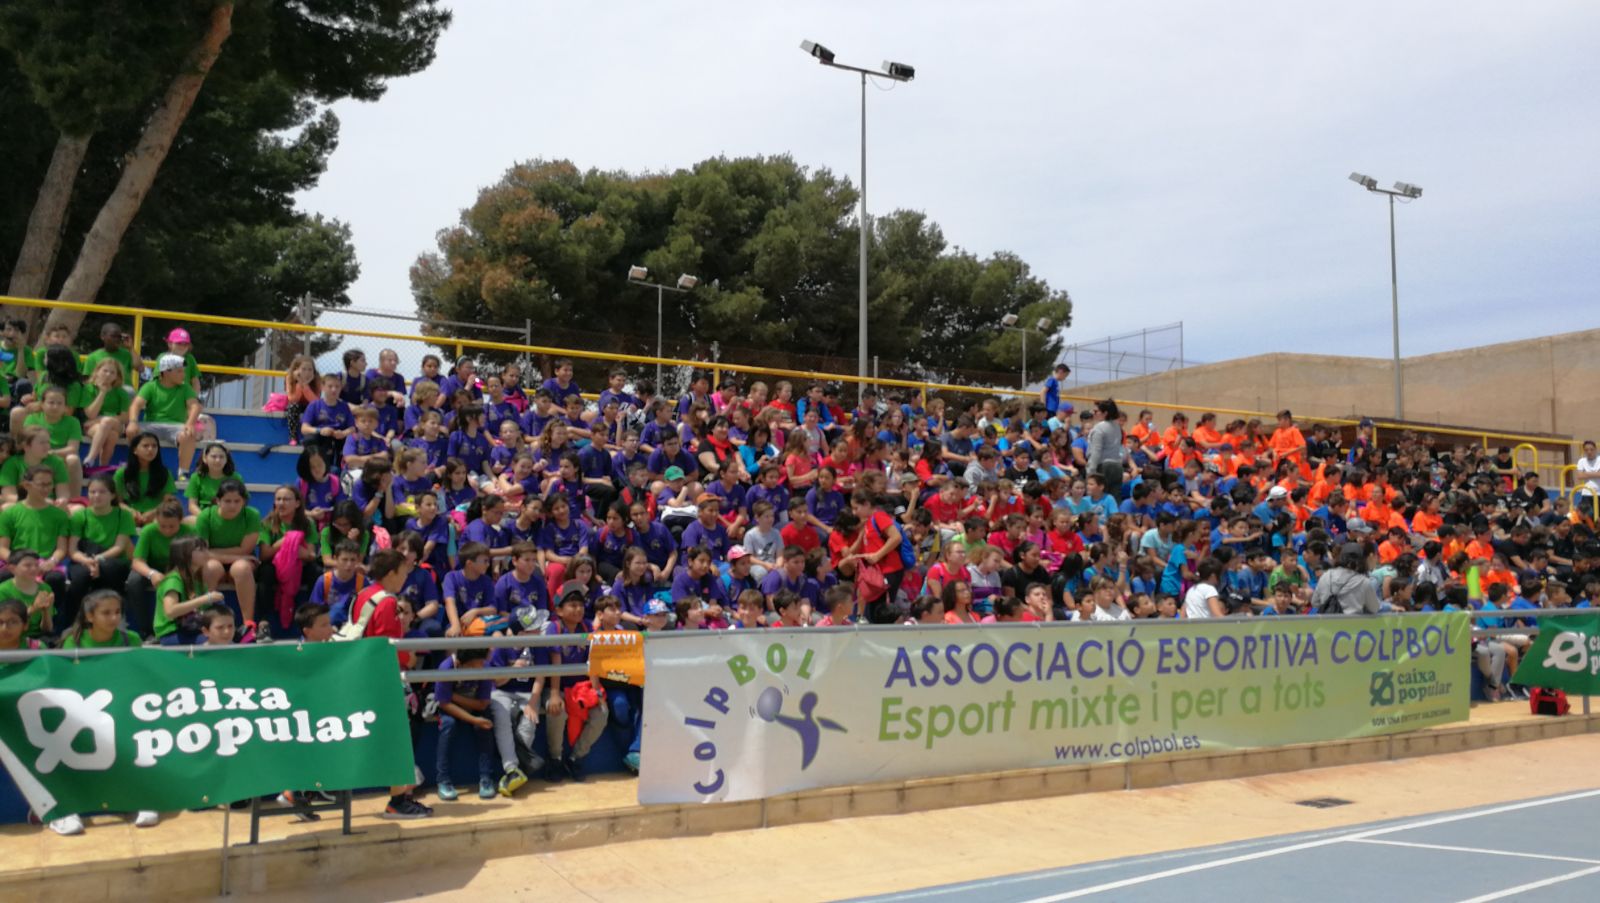 Arranquen les finals de Colpbol 2018 amb més de 4000 esportistes